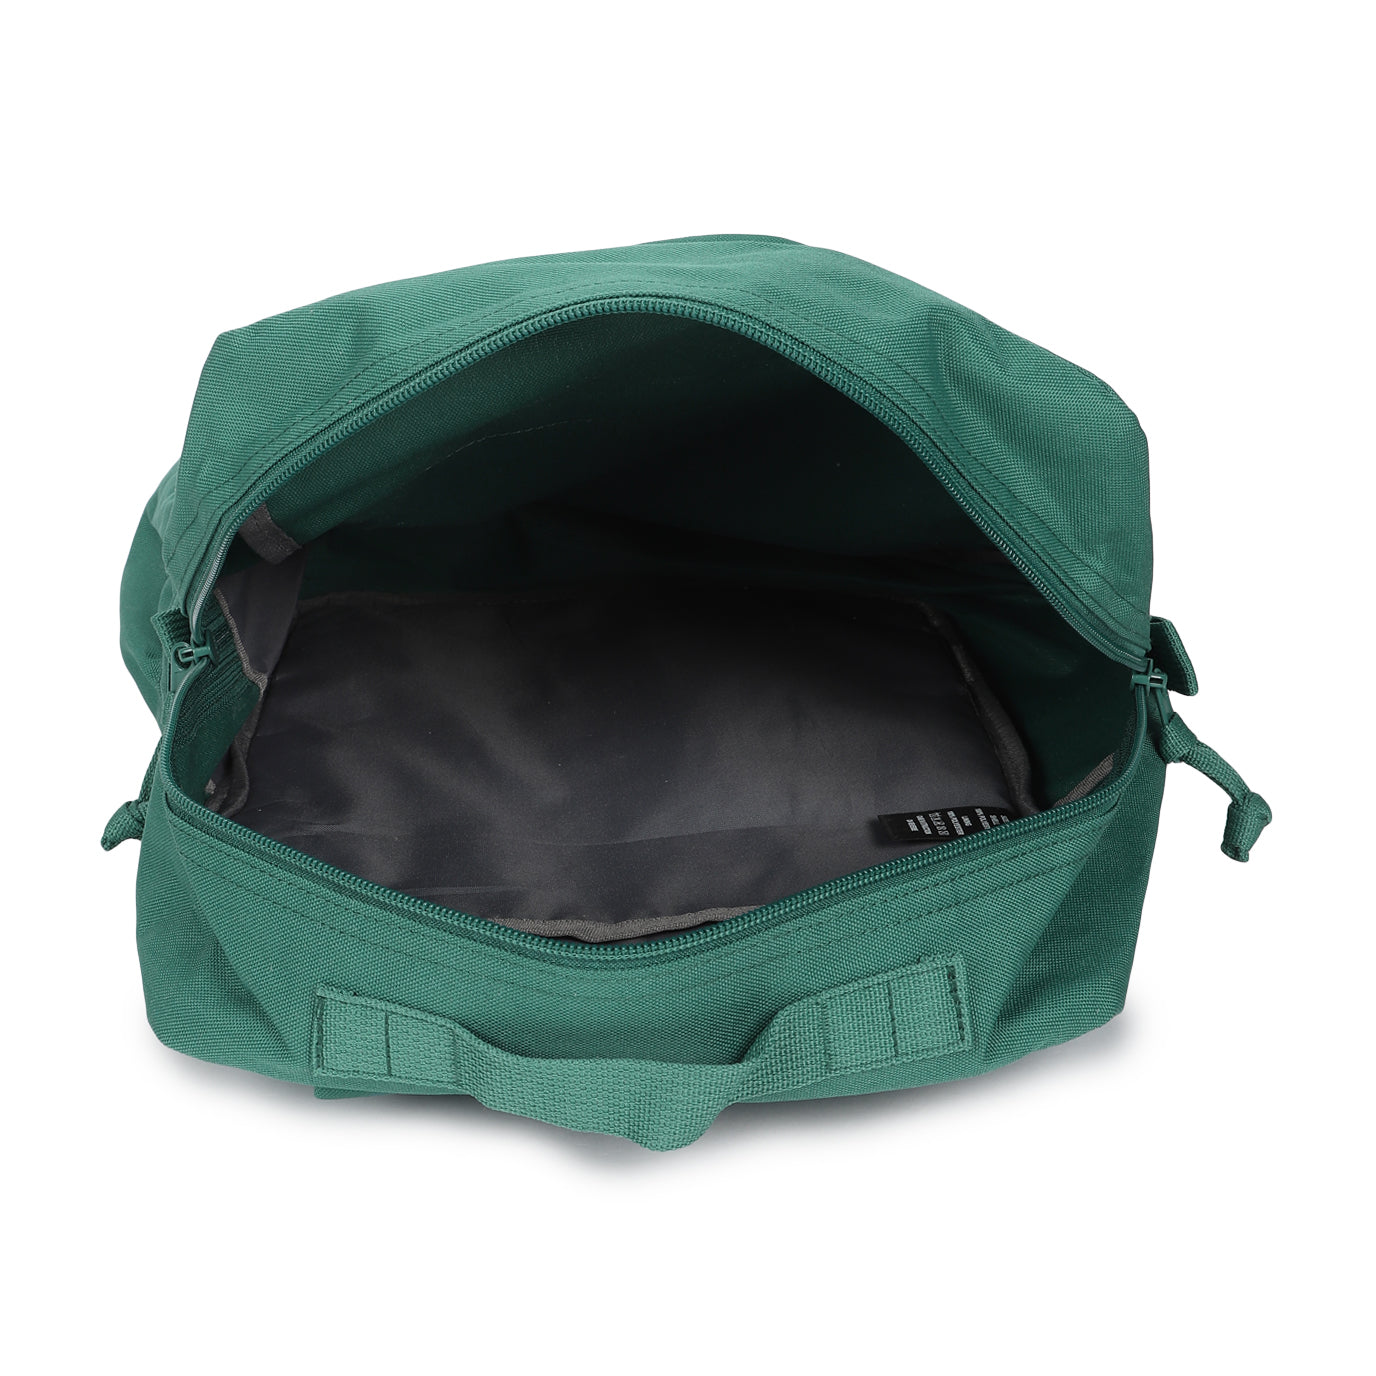 Men's Green Solid Backpack